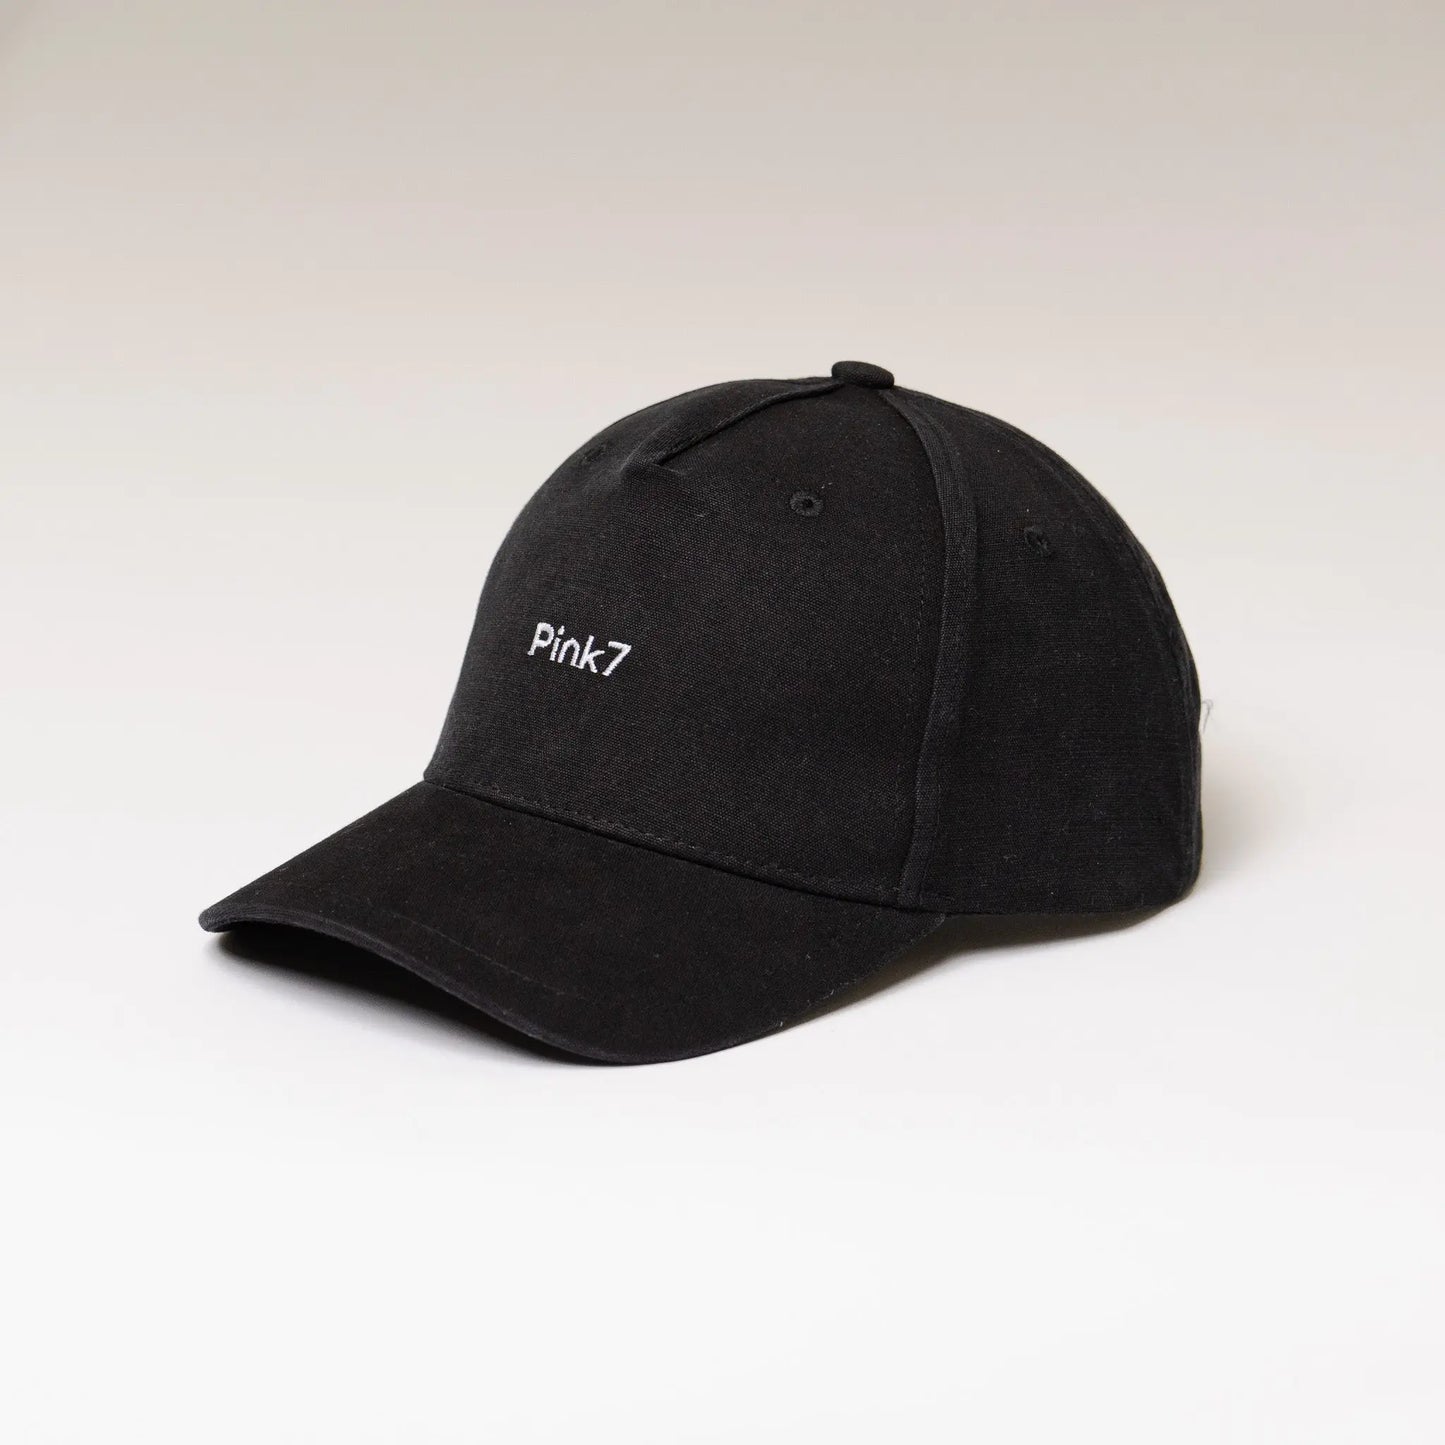 Classics Dad Hat - Black - Pink7